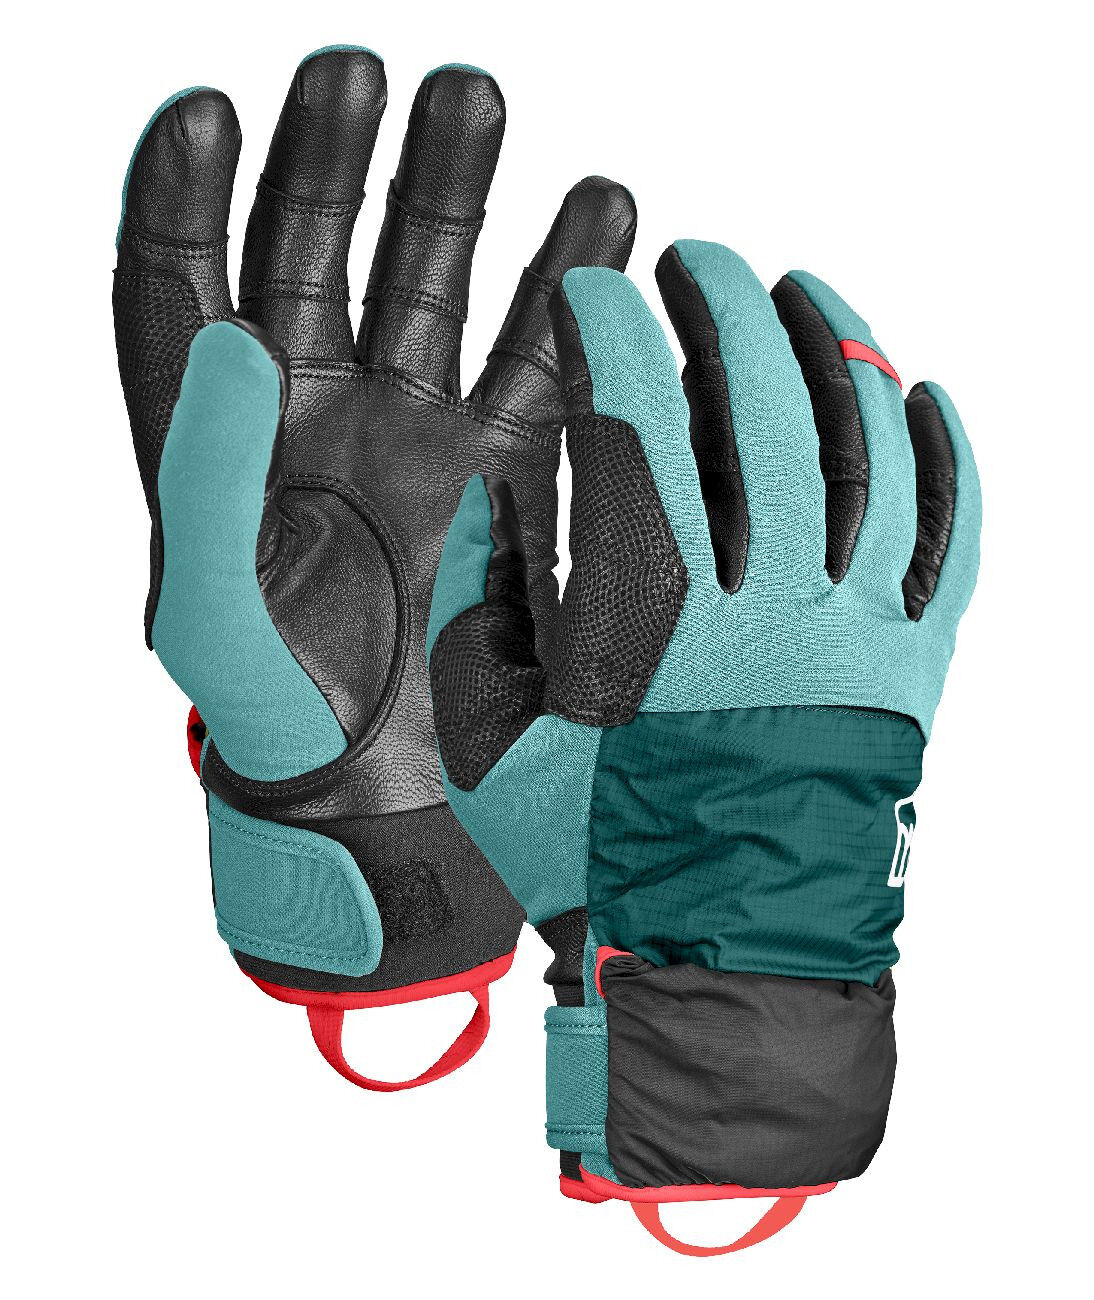 Ortovox Tour Pro Cover Glove - Ski gloves - Women's